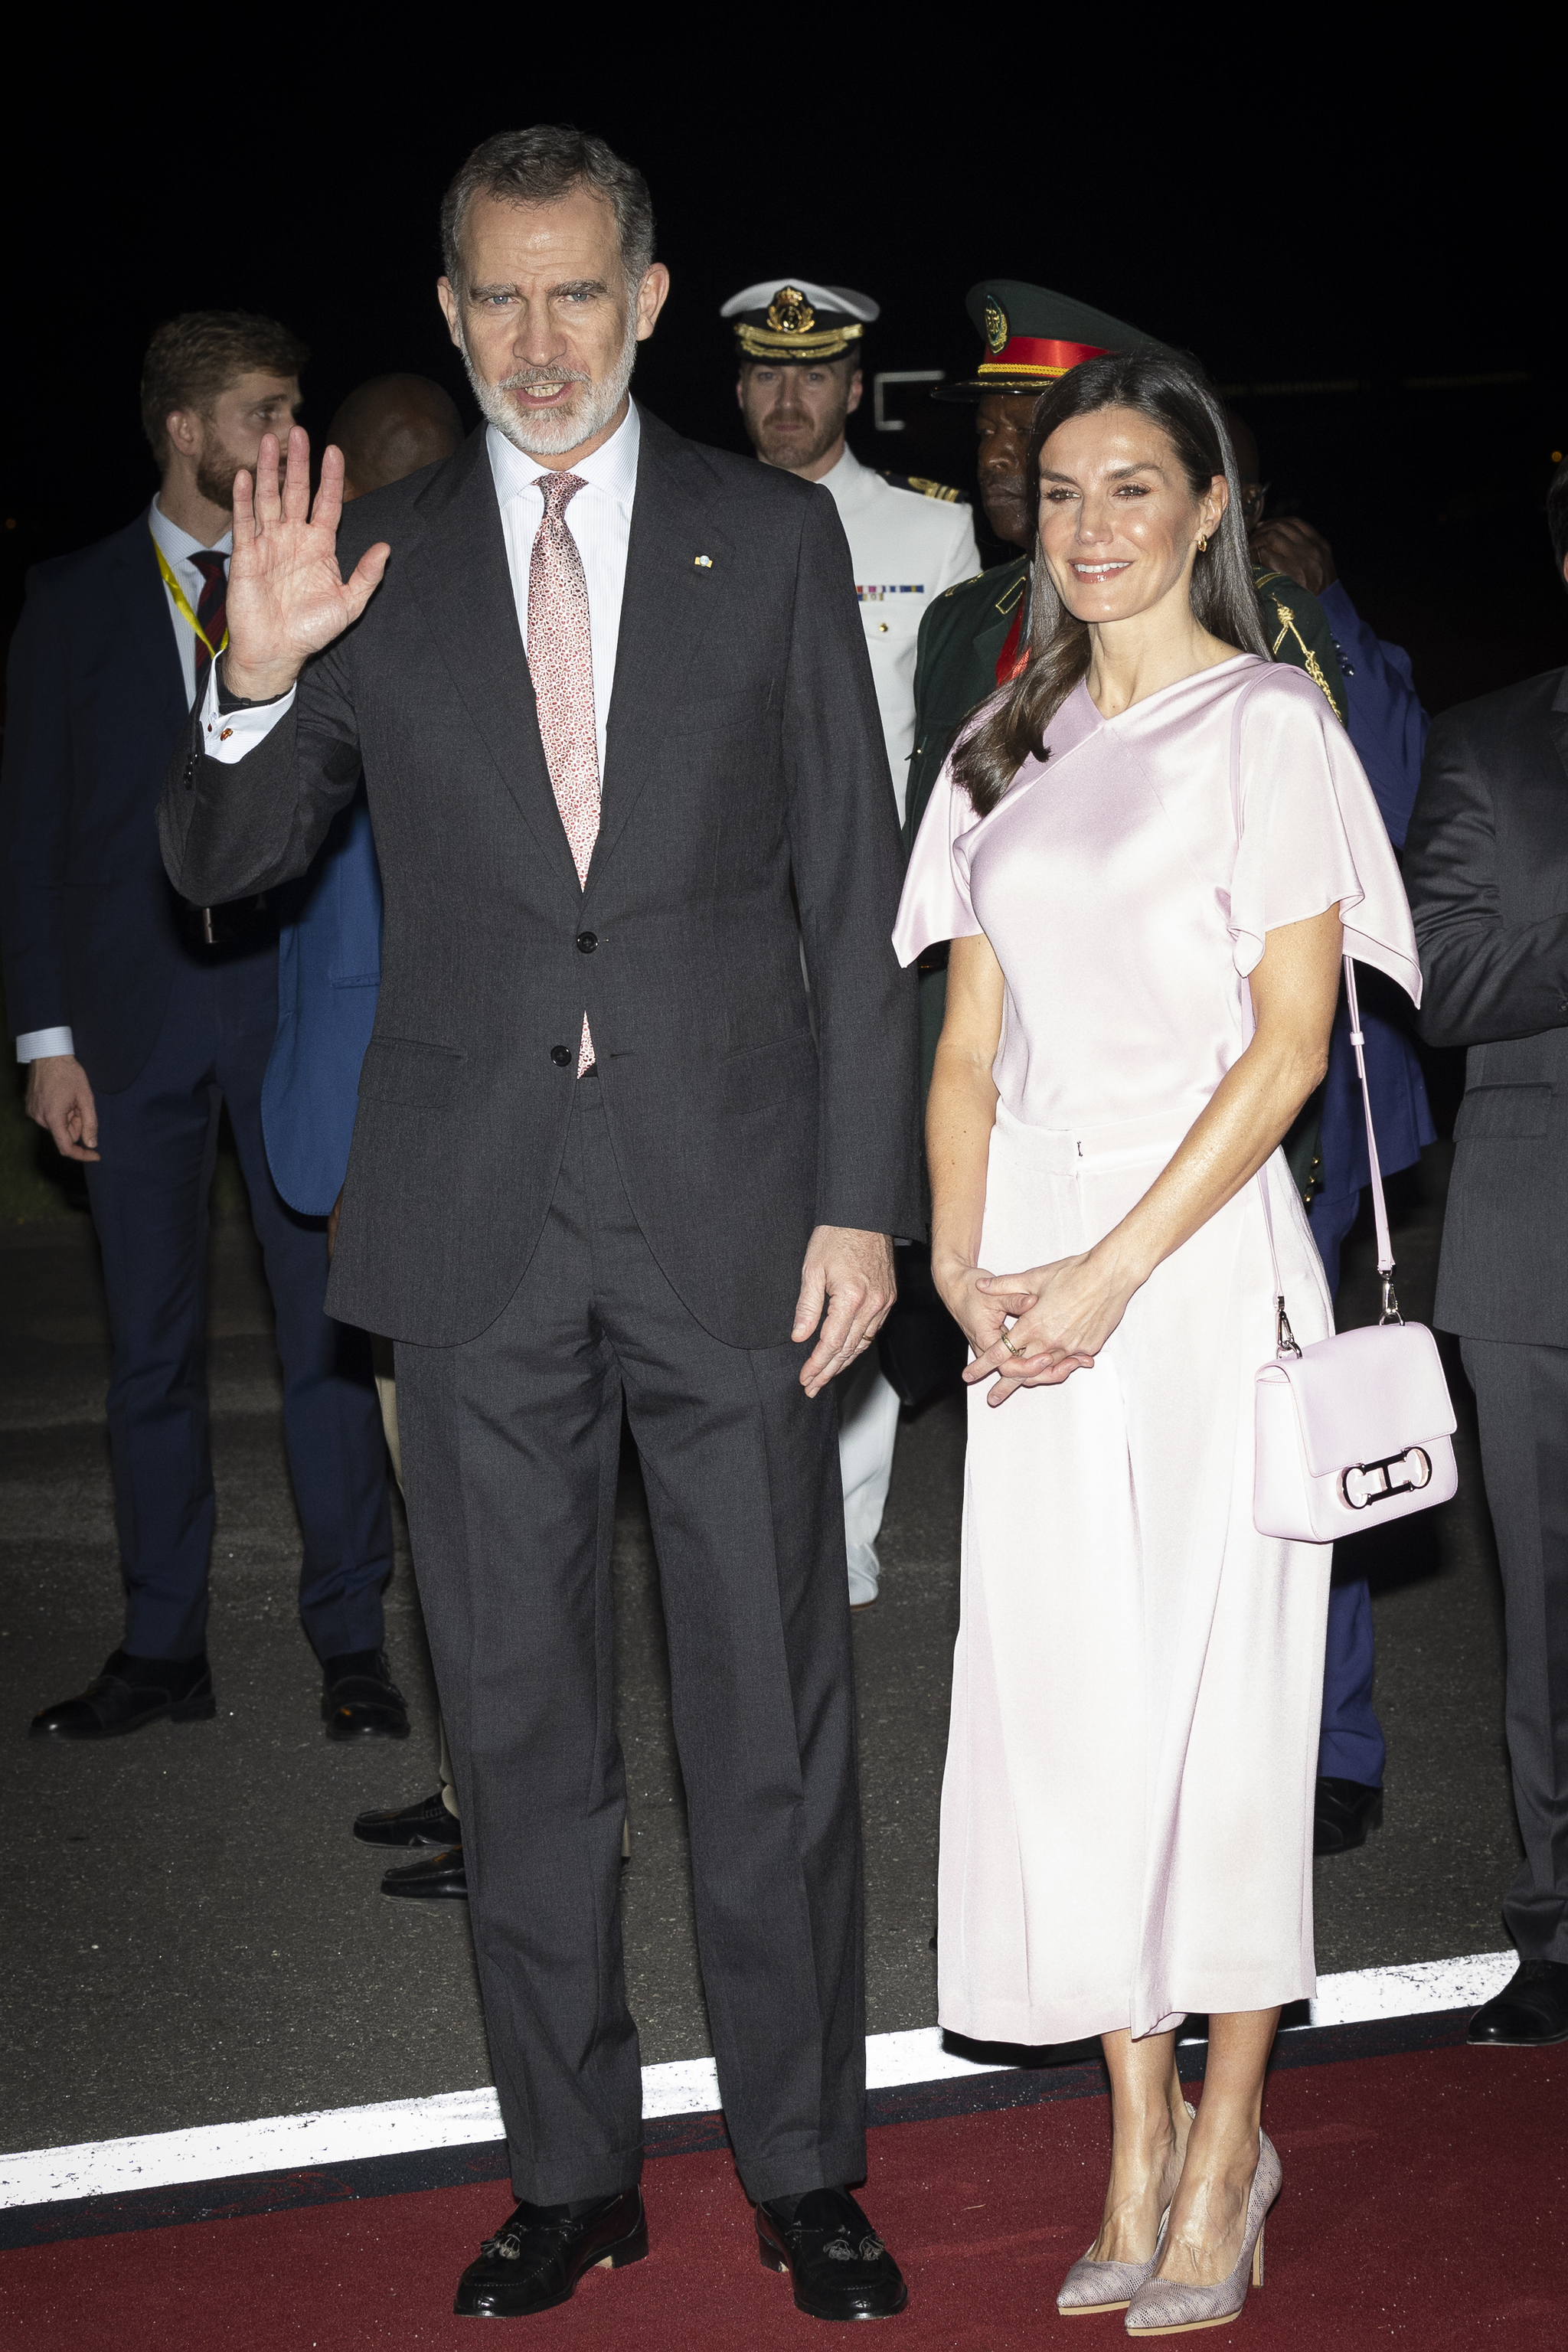 La reina Letizia vestida de rosa palo, el mismo color de la corbata del rey Felipe, a su llegada a Angola.